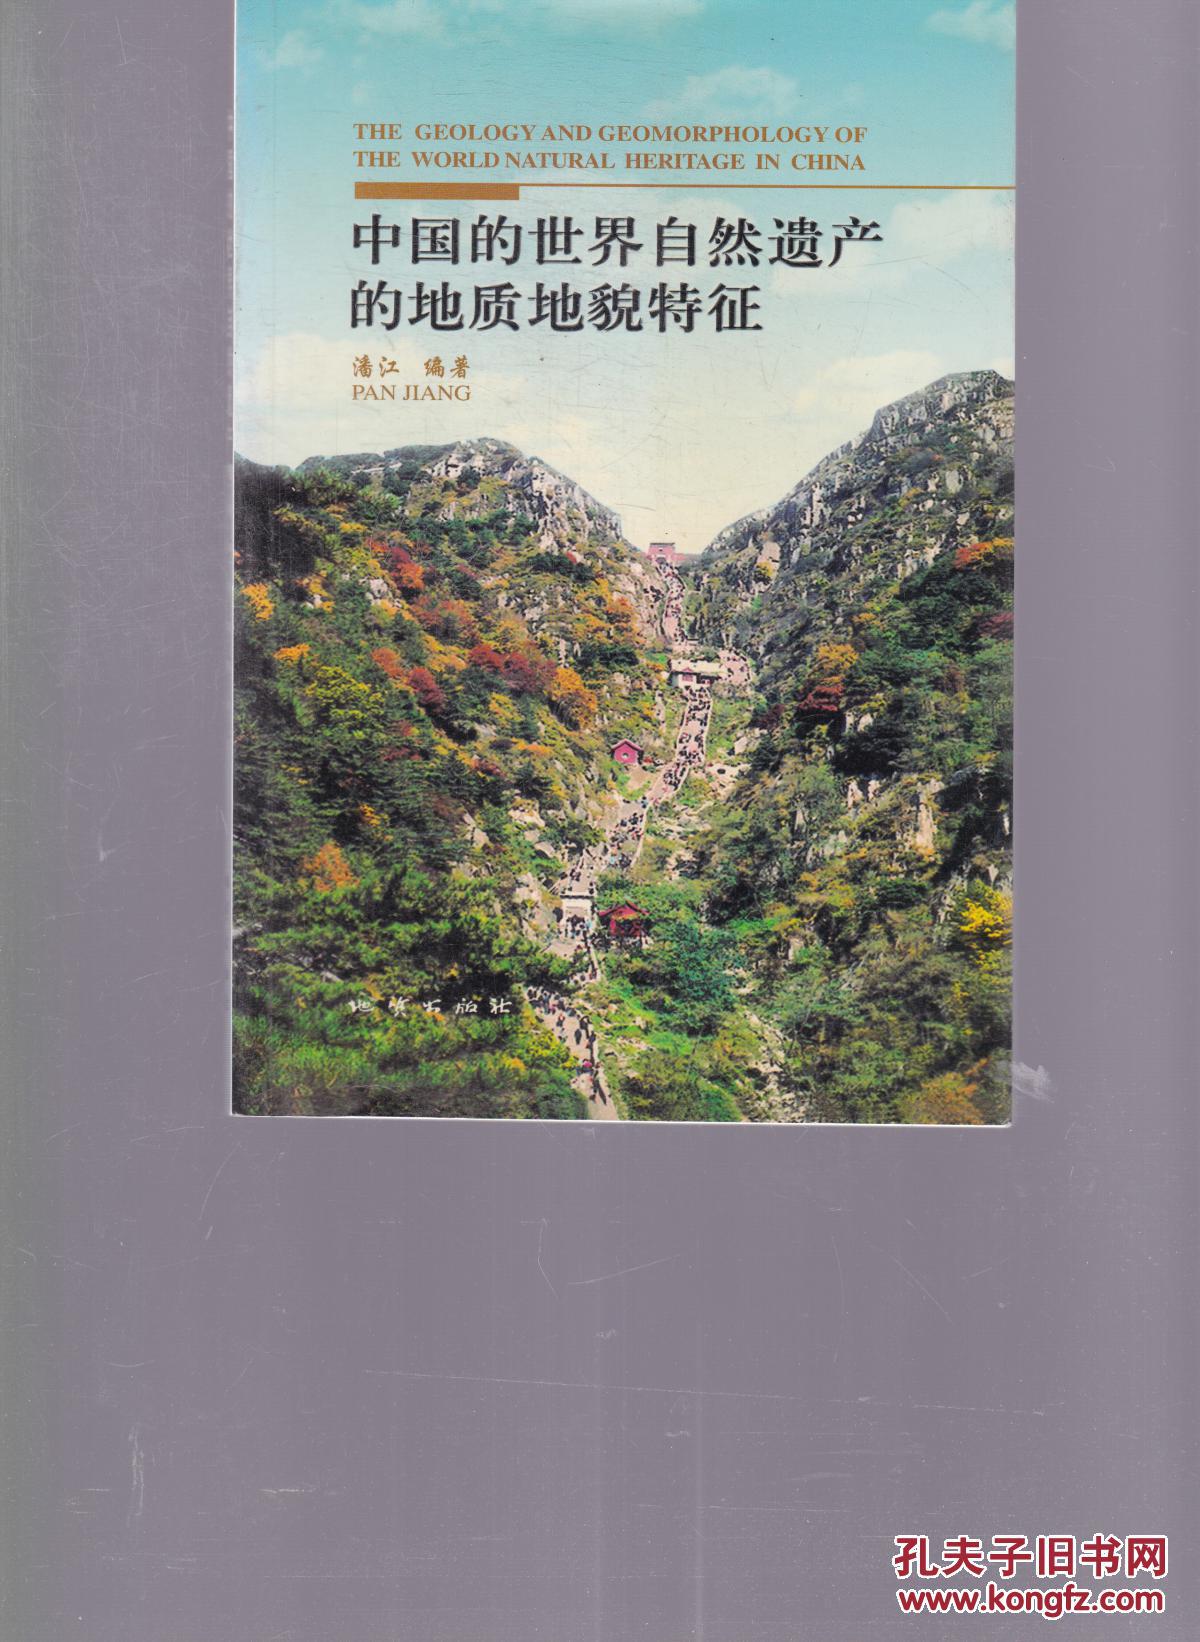 【图】中国的世界自然遗产的地质地貌特征_地